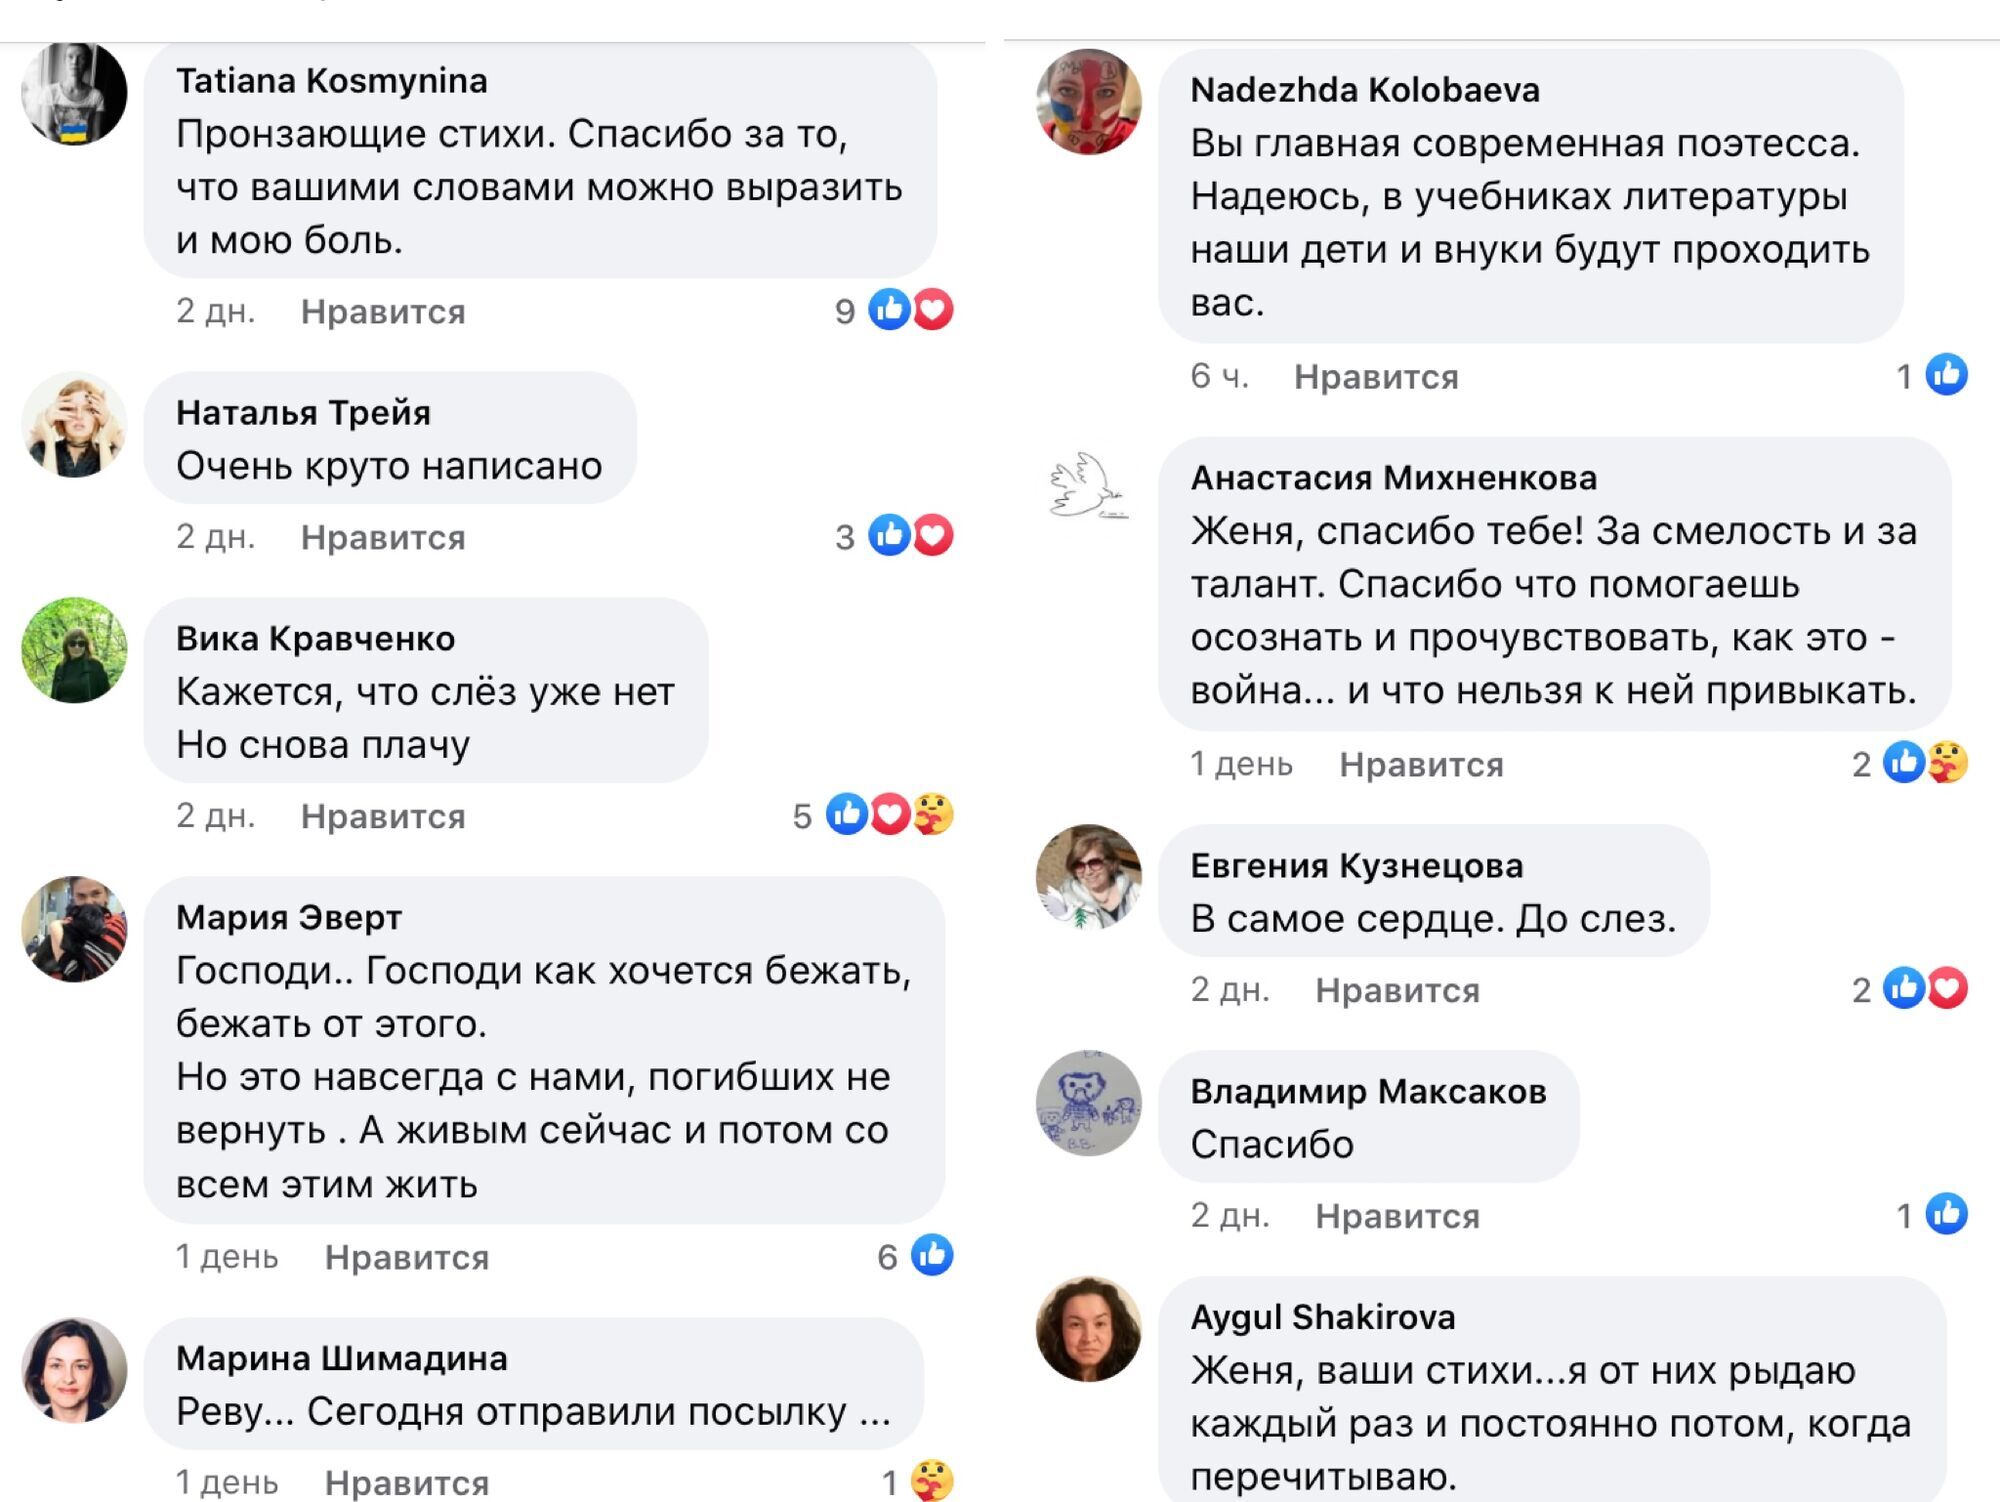 Комментарии под публикацией Беркович